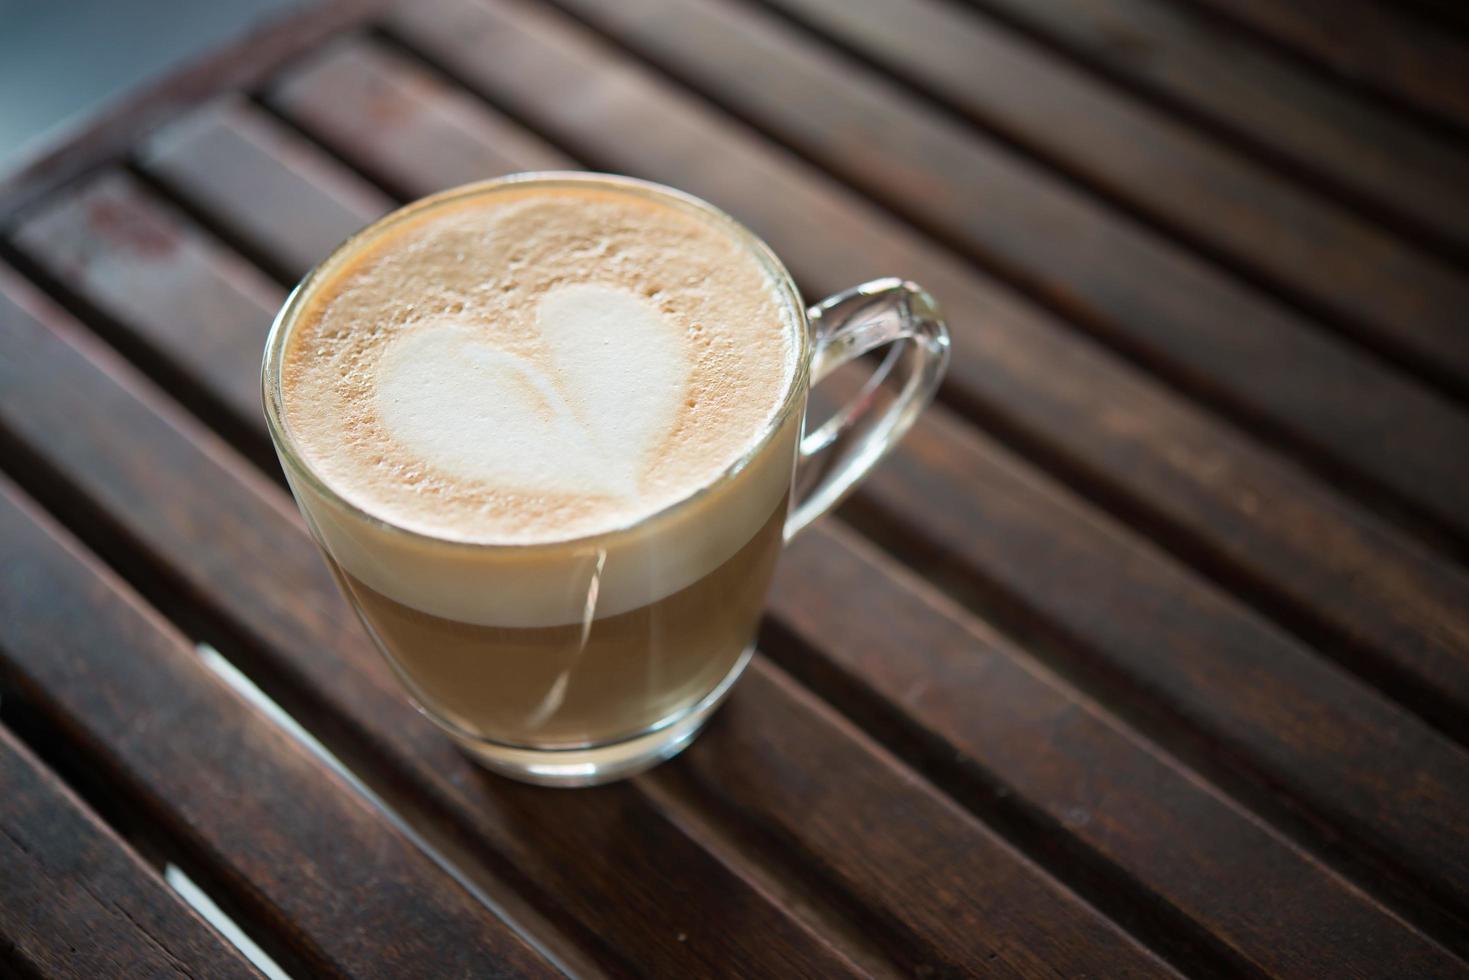 primo piano della tazza del cappuccino con il modello del latte a forma di cuore foto